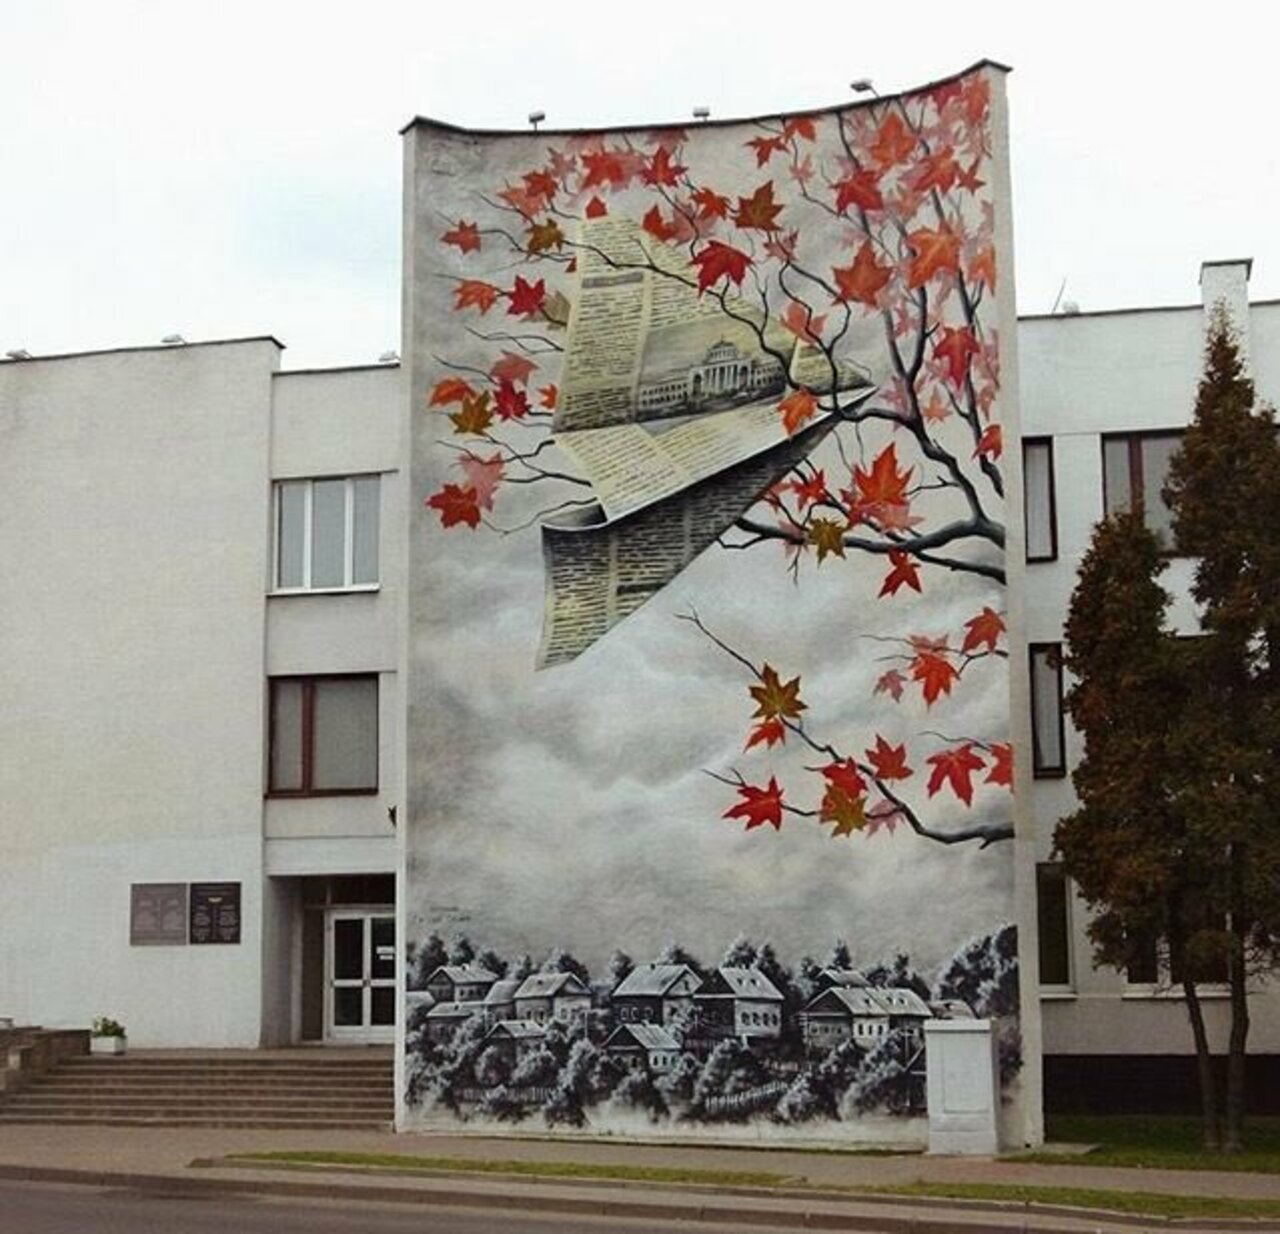 RT @GoogleStreetArt: New Street Art by MUTUS in Belarus 

#art #graffiti #mural #streetart https://t.co/dLARj9bvJ8